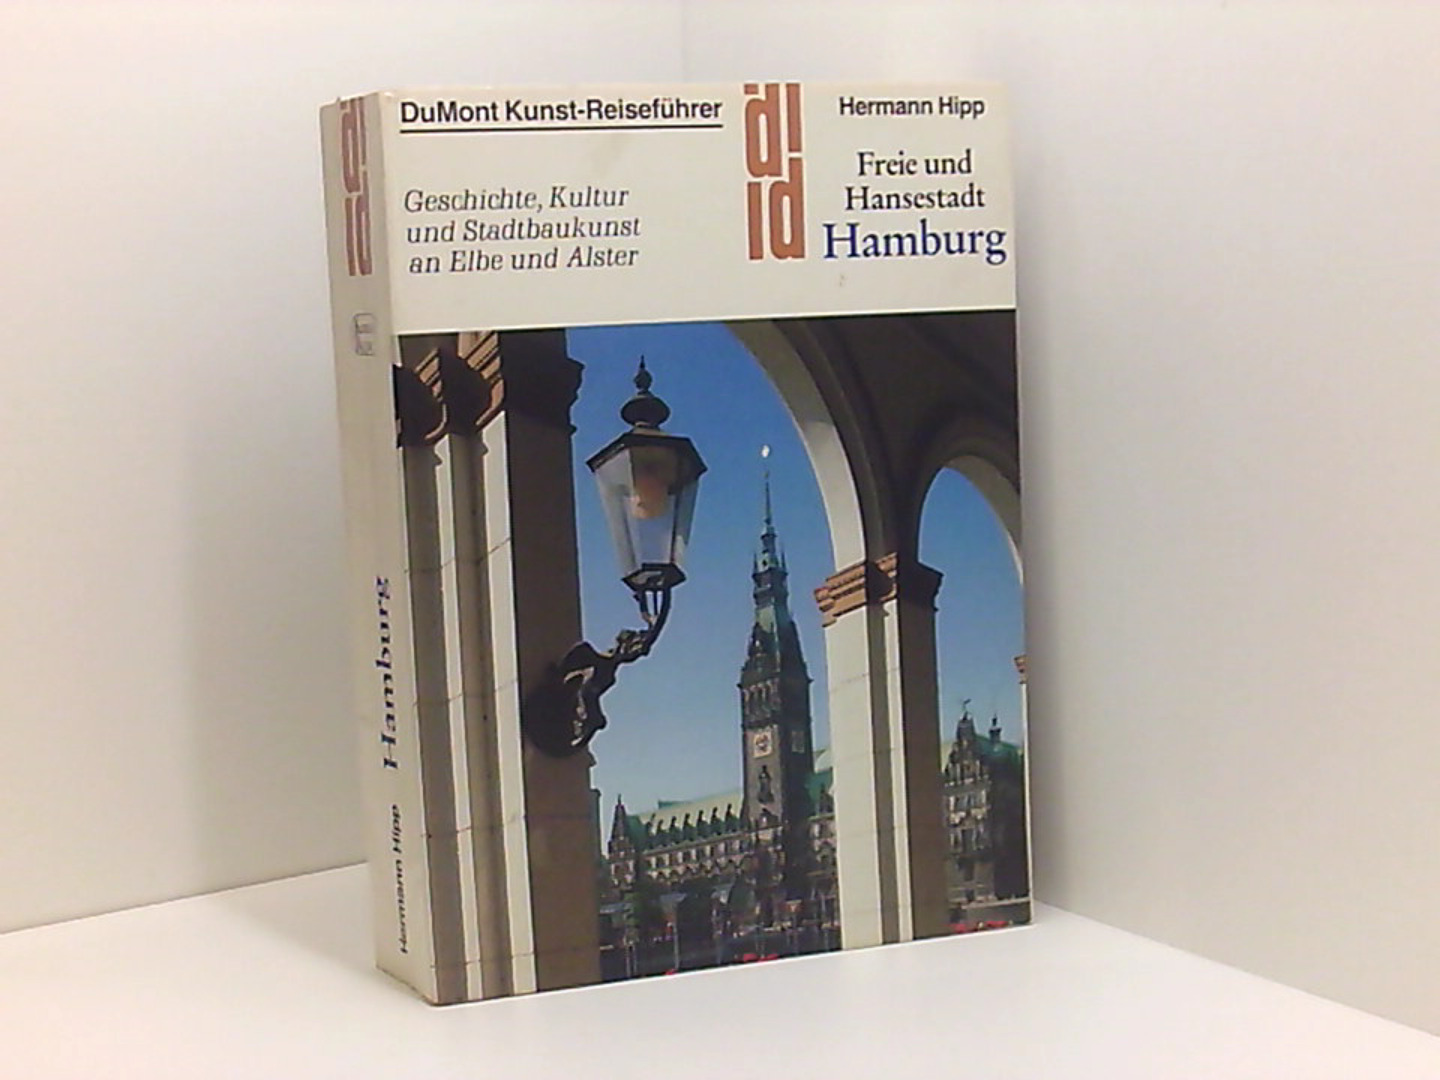 Freie und Hansestadt Hamburg. Kunst- Reiseführer. Geschichte, Kultur und Stadtbaukunst an Elbe und Alster.